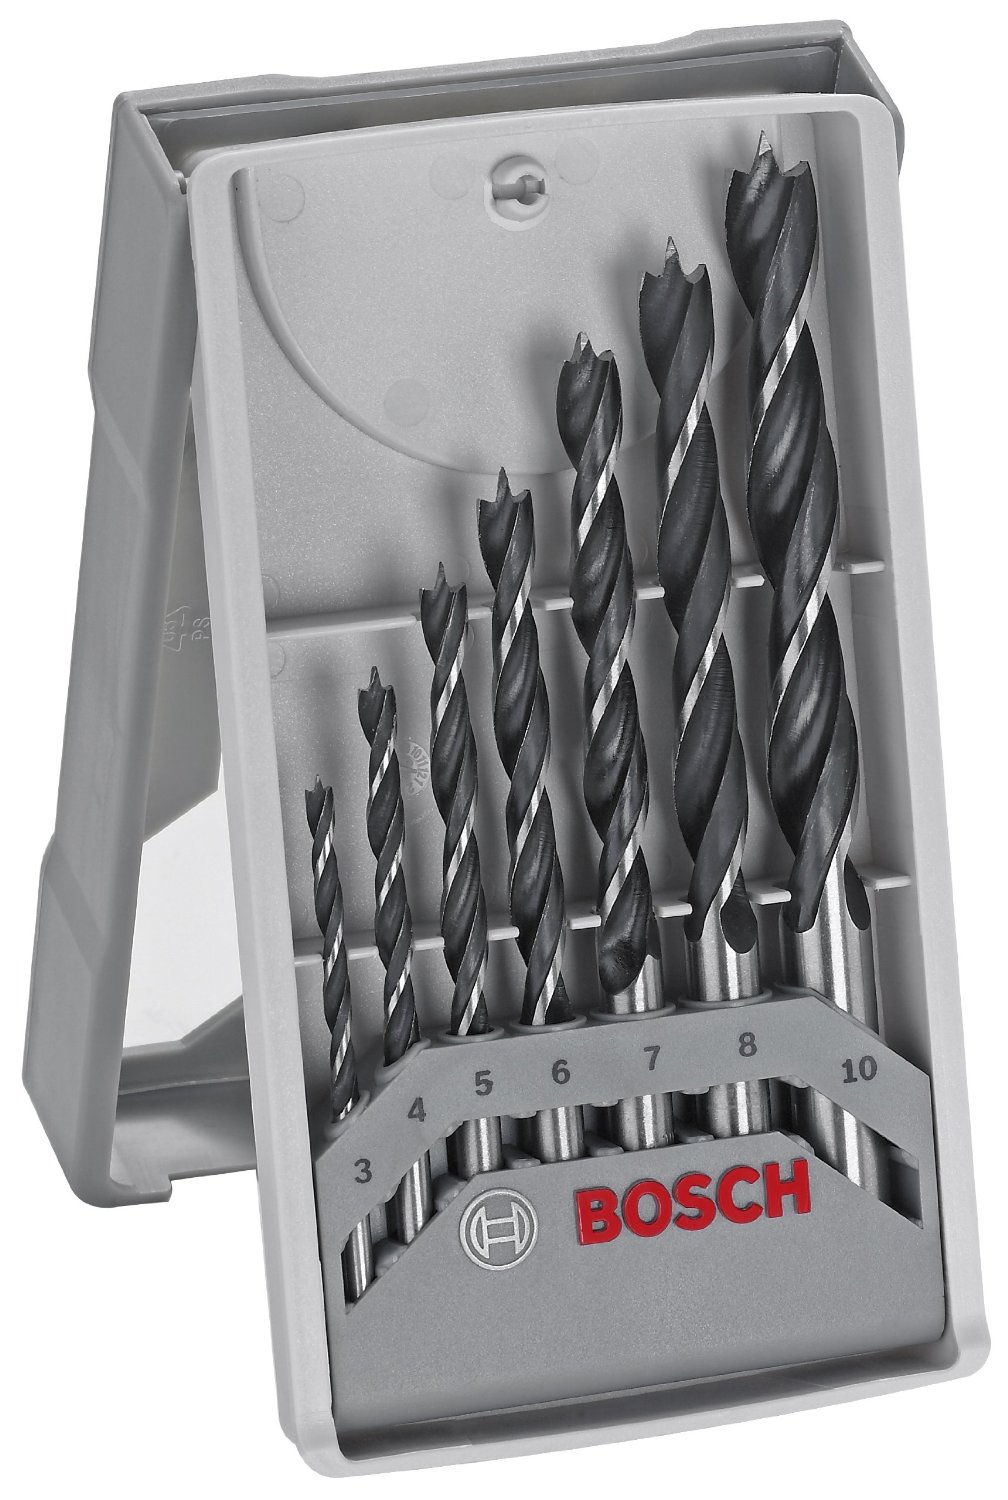 Coffret de 7 forets à bois hélicoïdales Bosch Professional